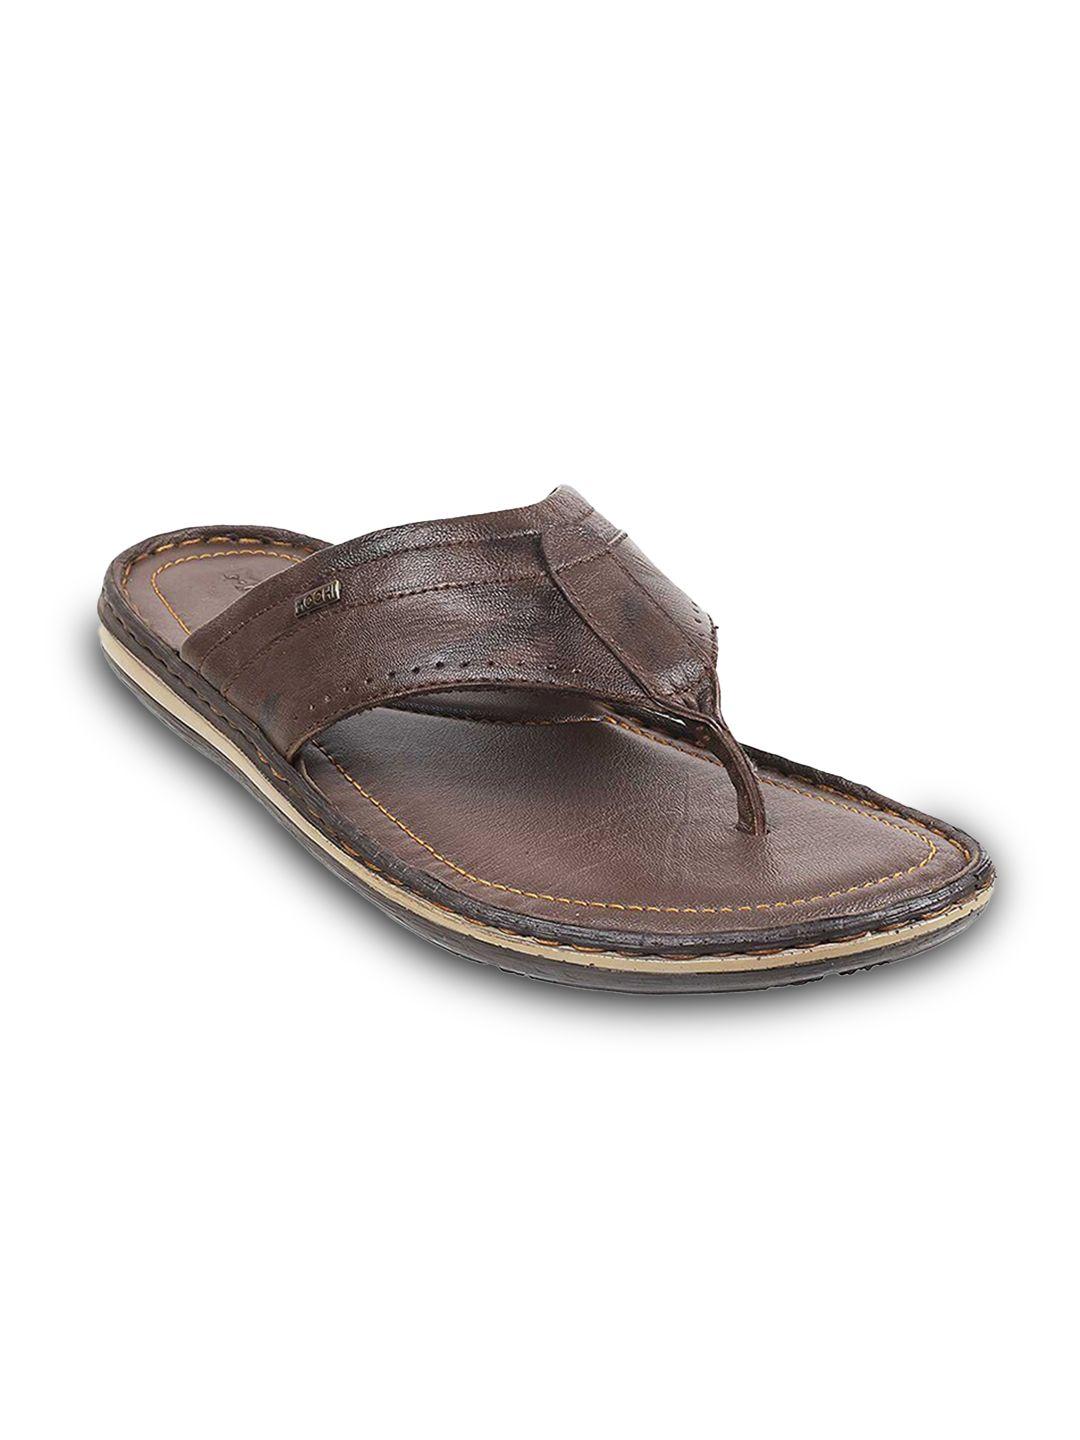 mochi men brown & black leather comfort sandals